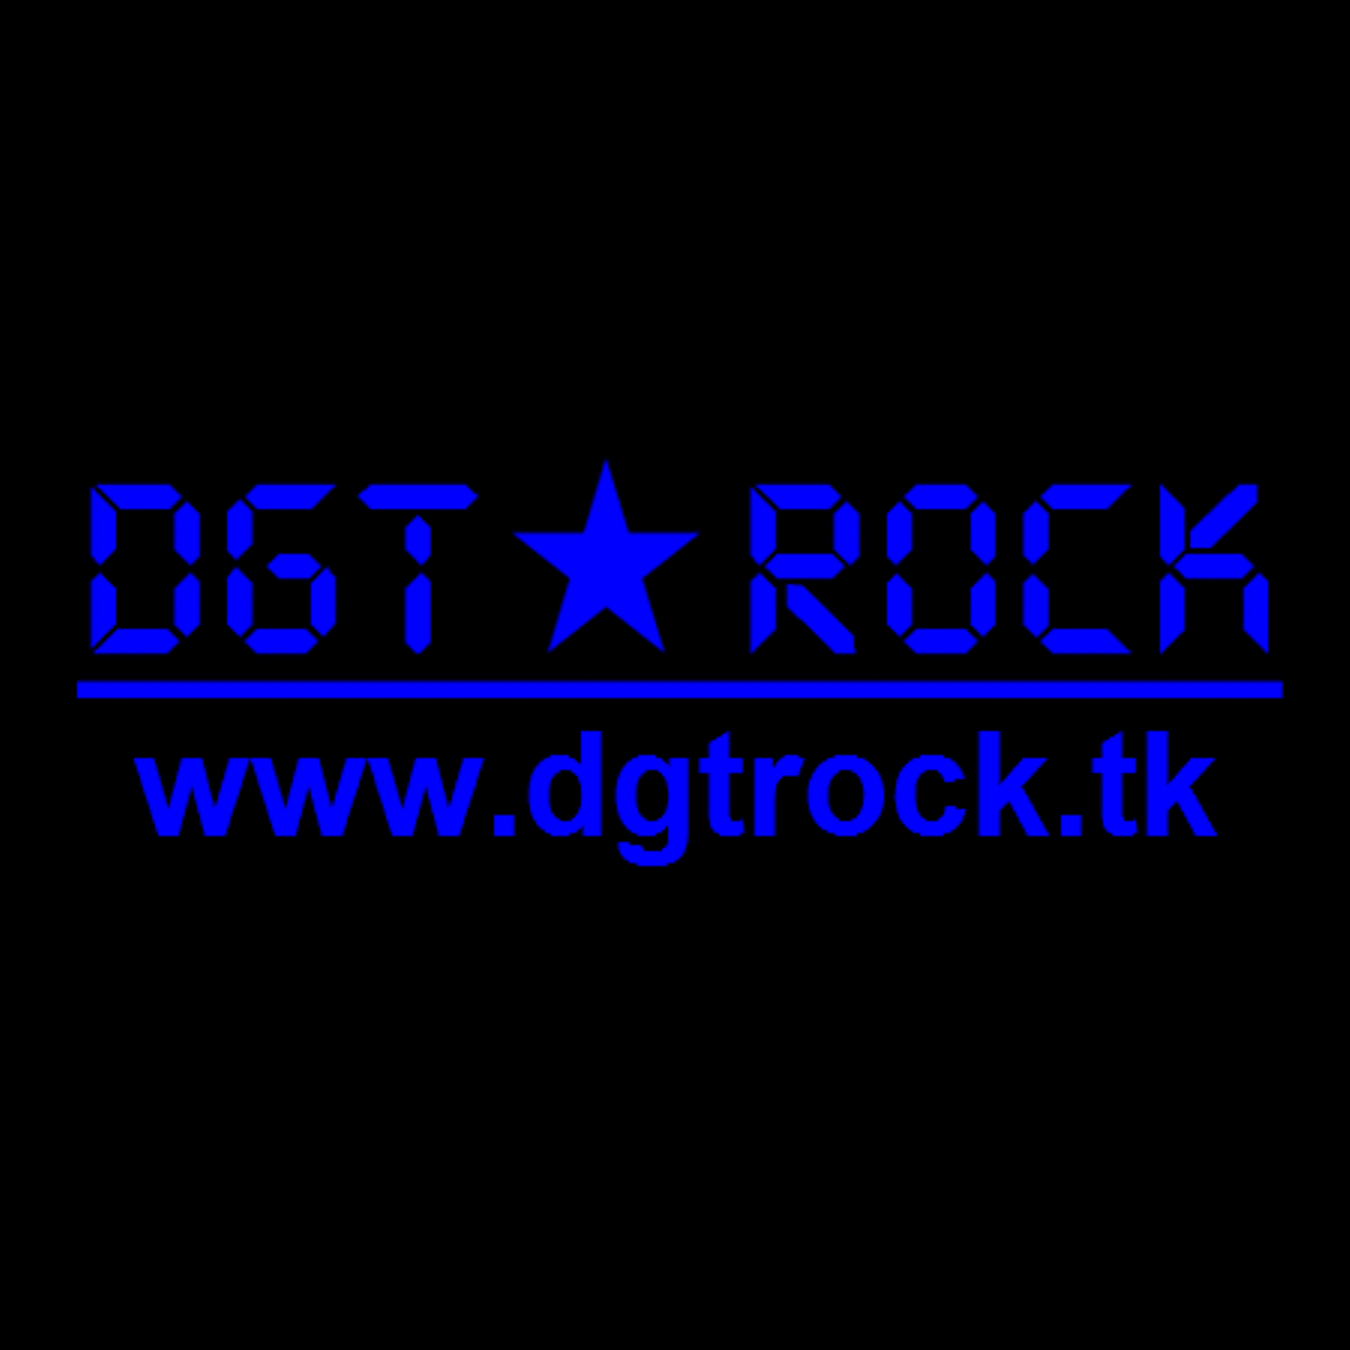 DGT ROCK - www.dgtrock.tk